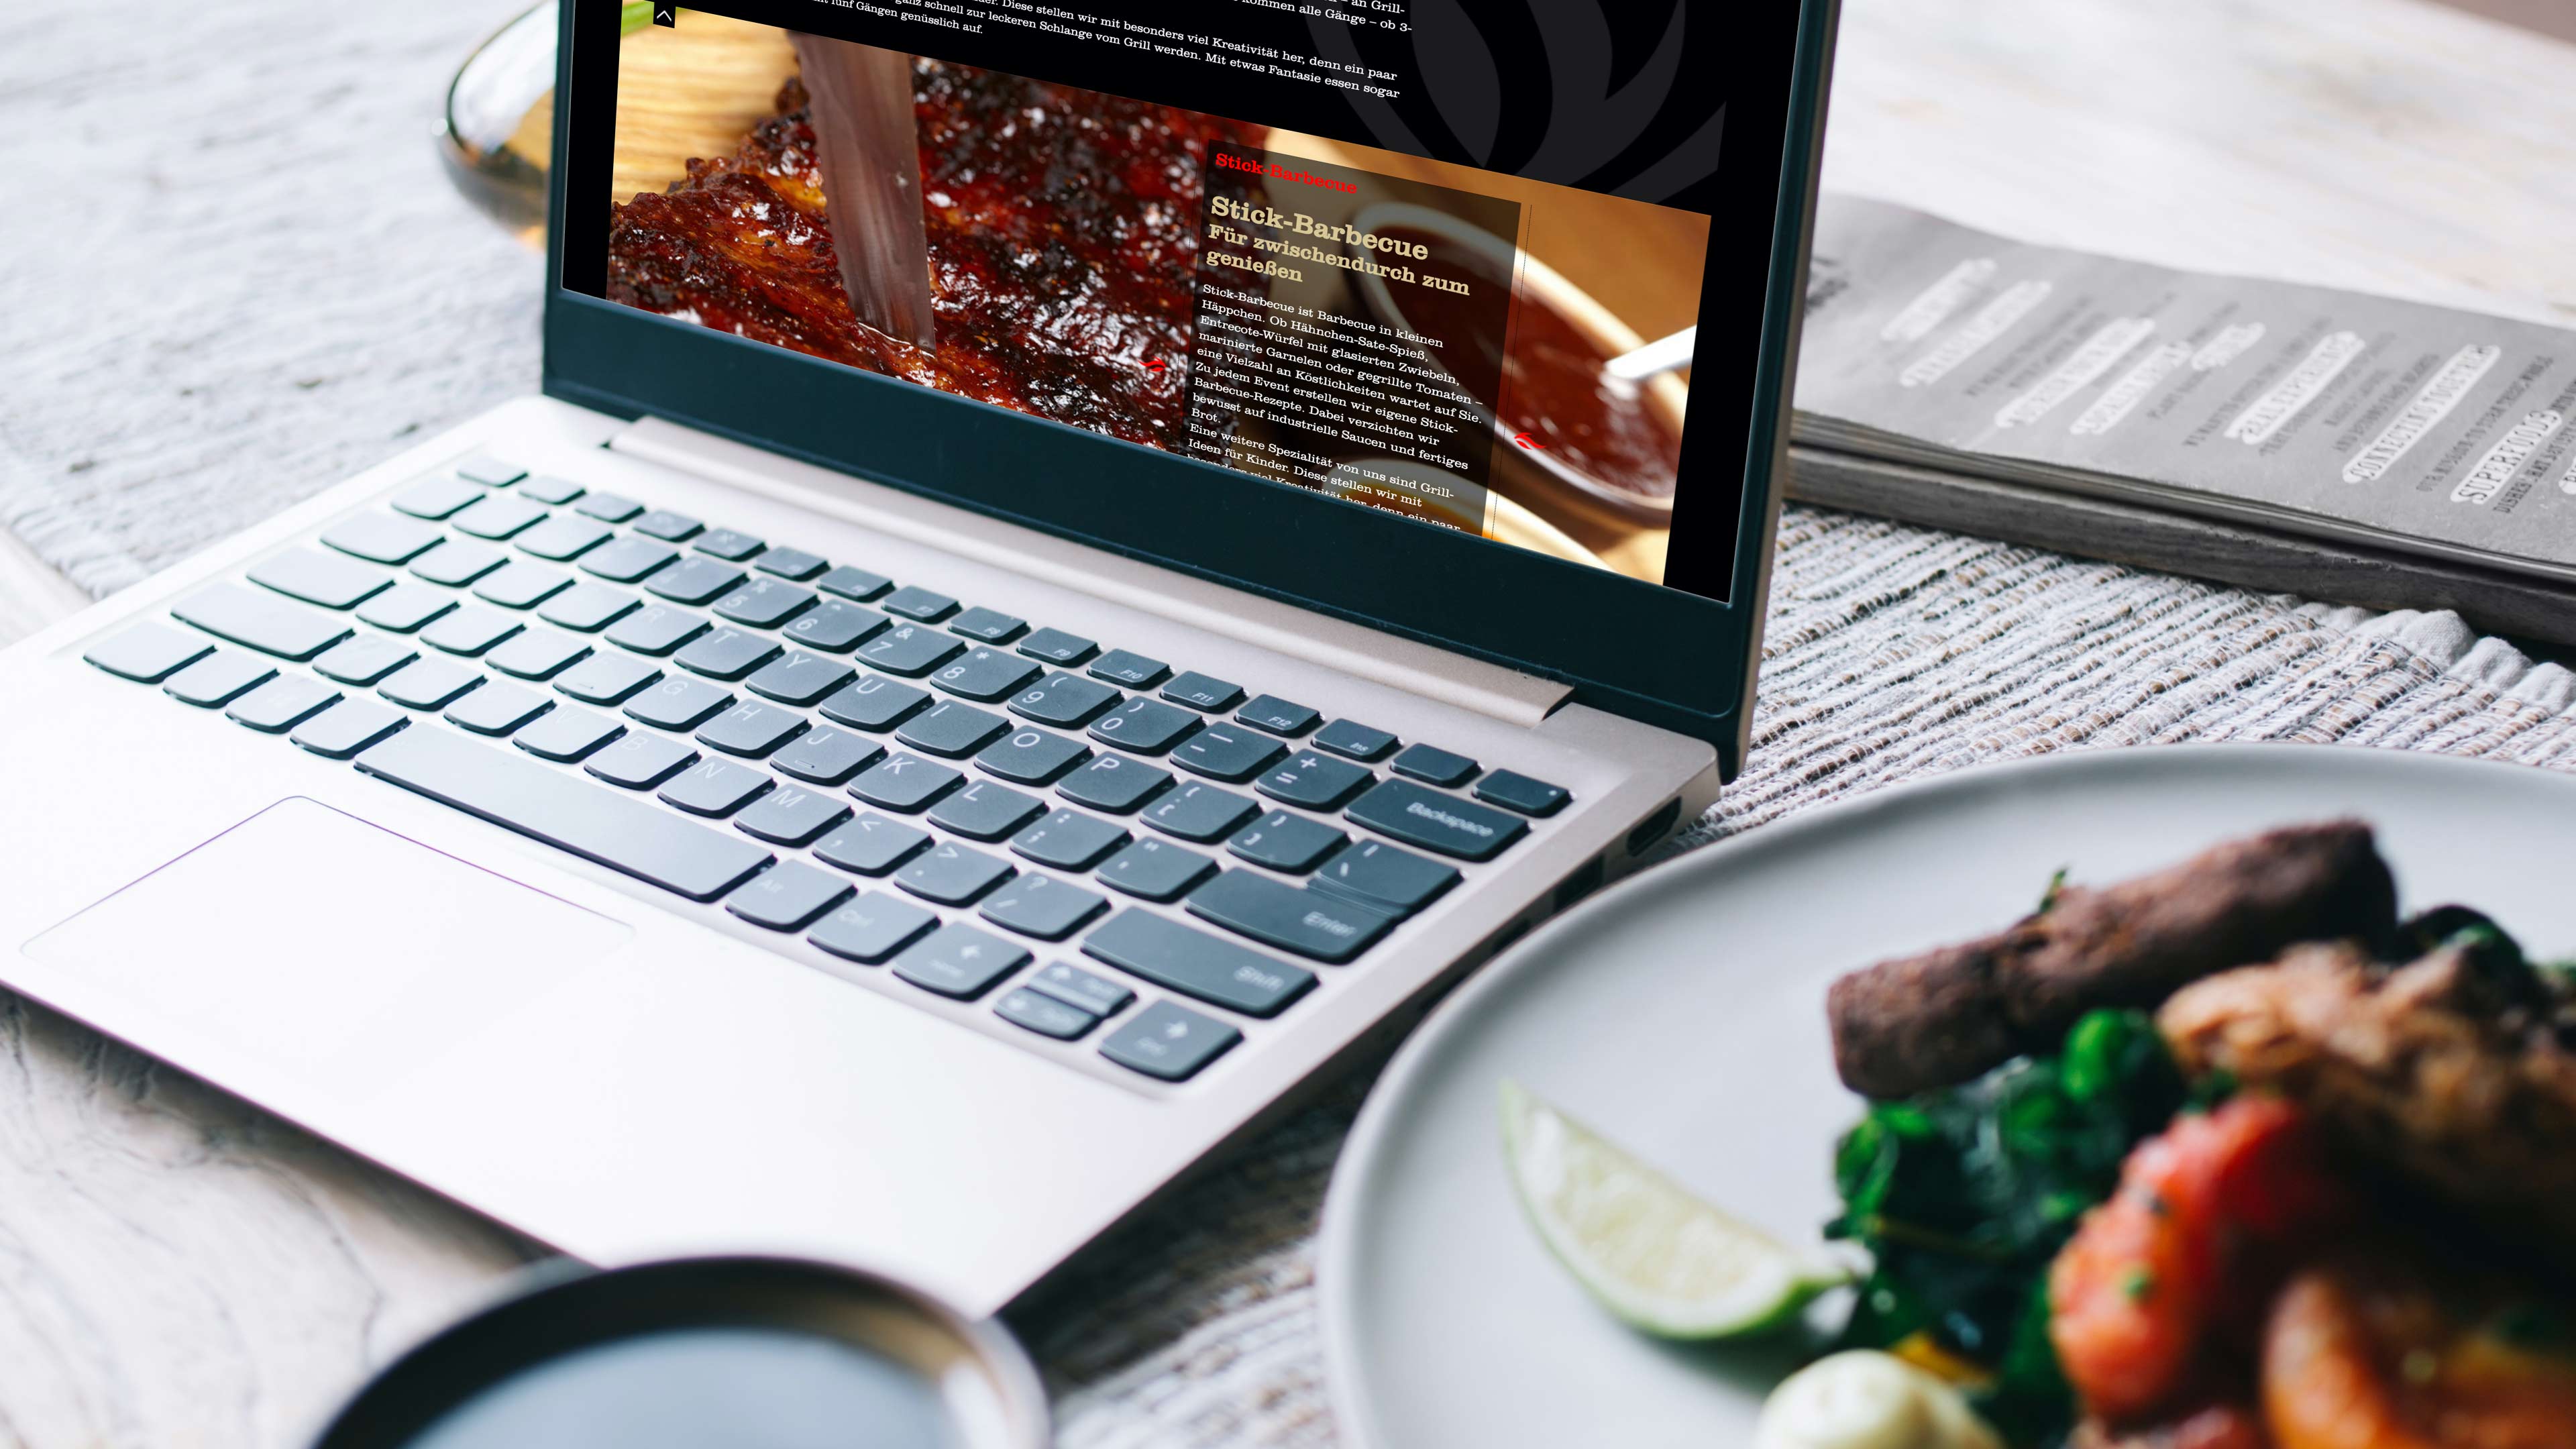 Ein BBQ Teller steht neben einem Macbook